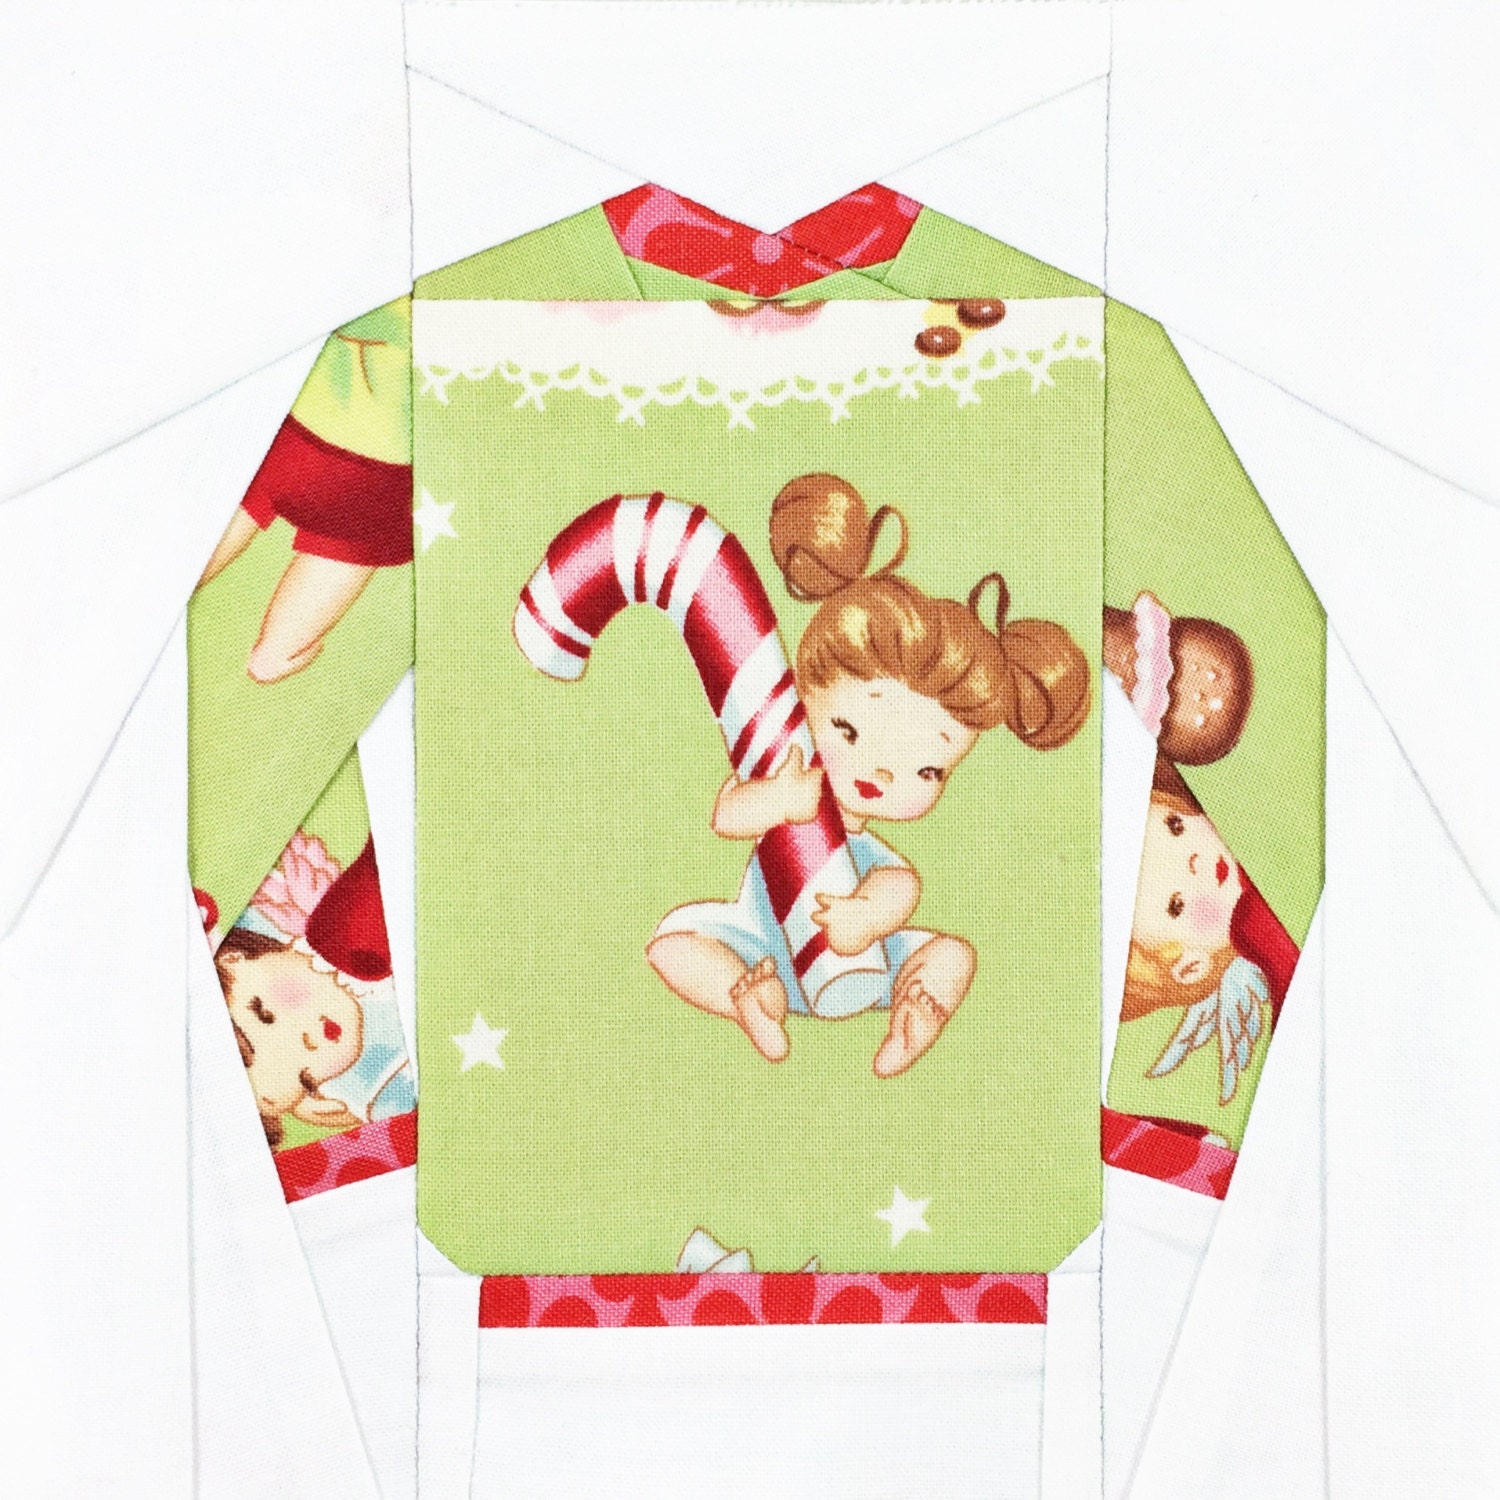 Christmas Ugly Sweater Co Body personalizado para bebé con nombre e inicial  para recién nacido de 6, 12, 18, 24 meses, Blanco